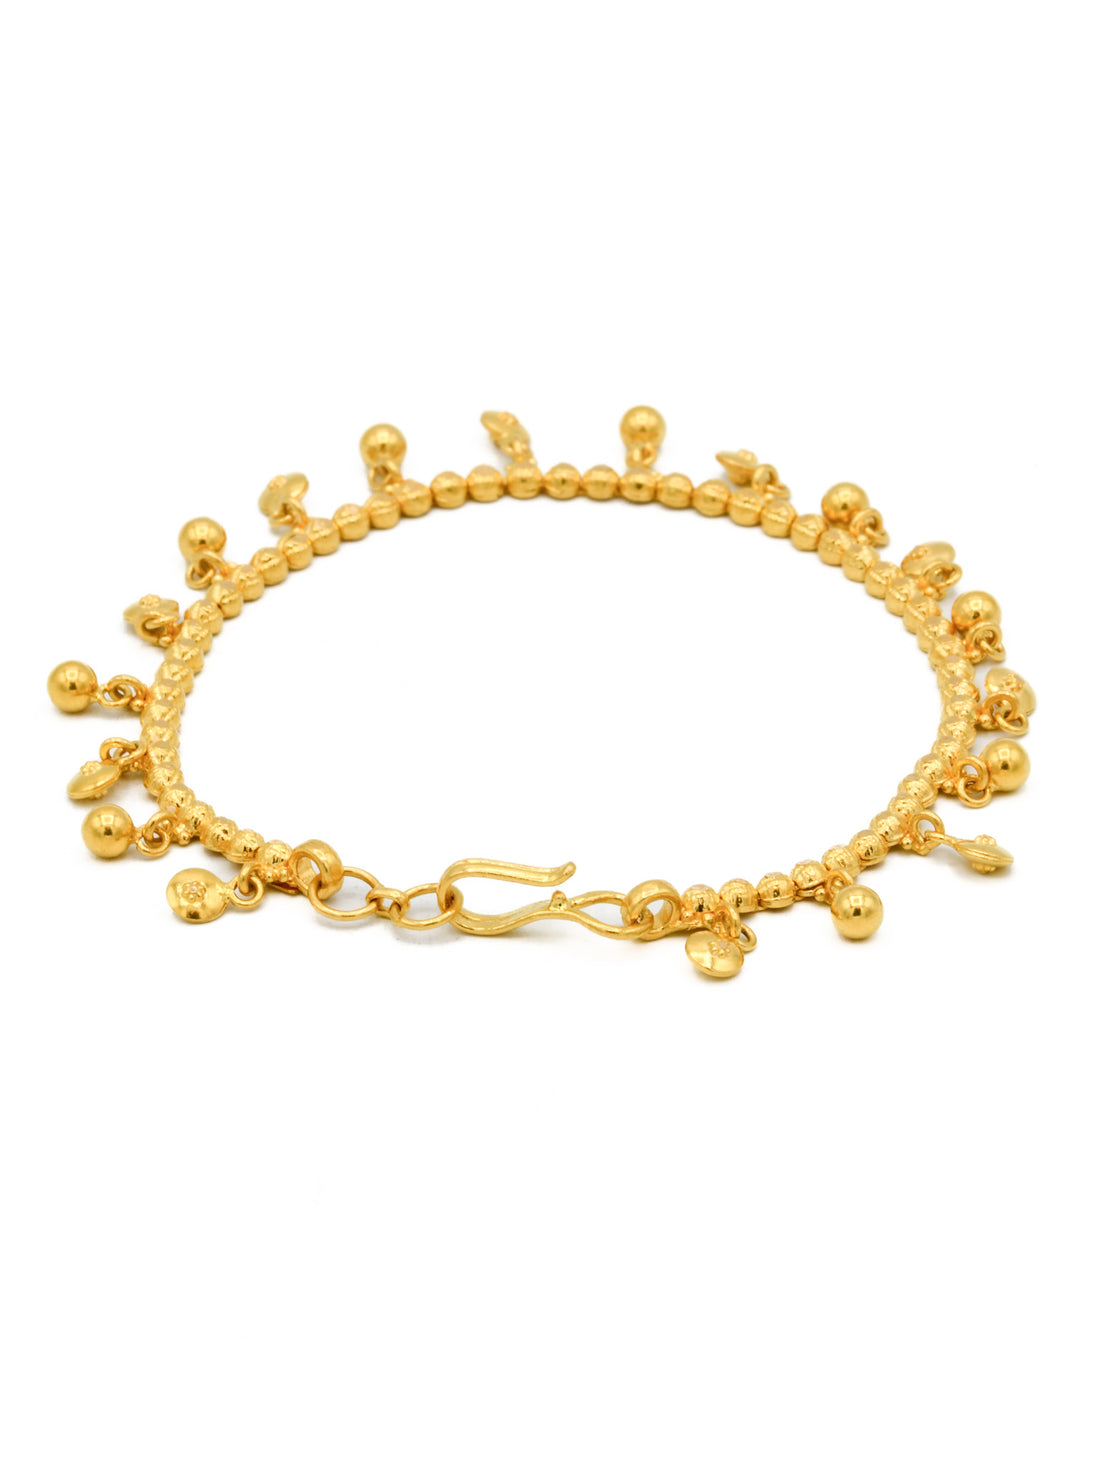 22ct Gold Ball Charms Ladies Bracelet - Roop Darshan